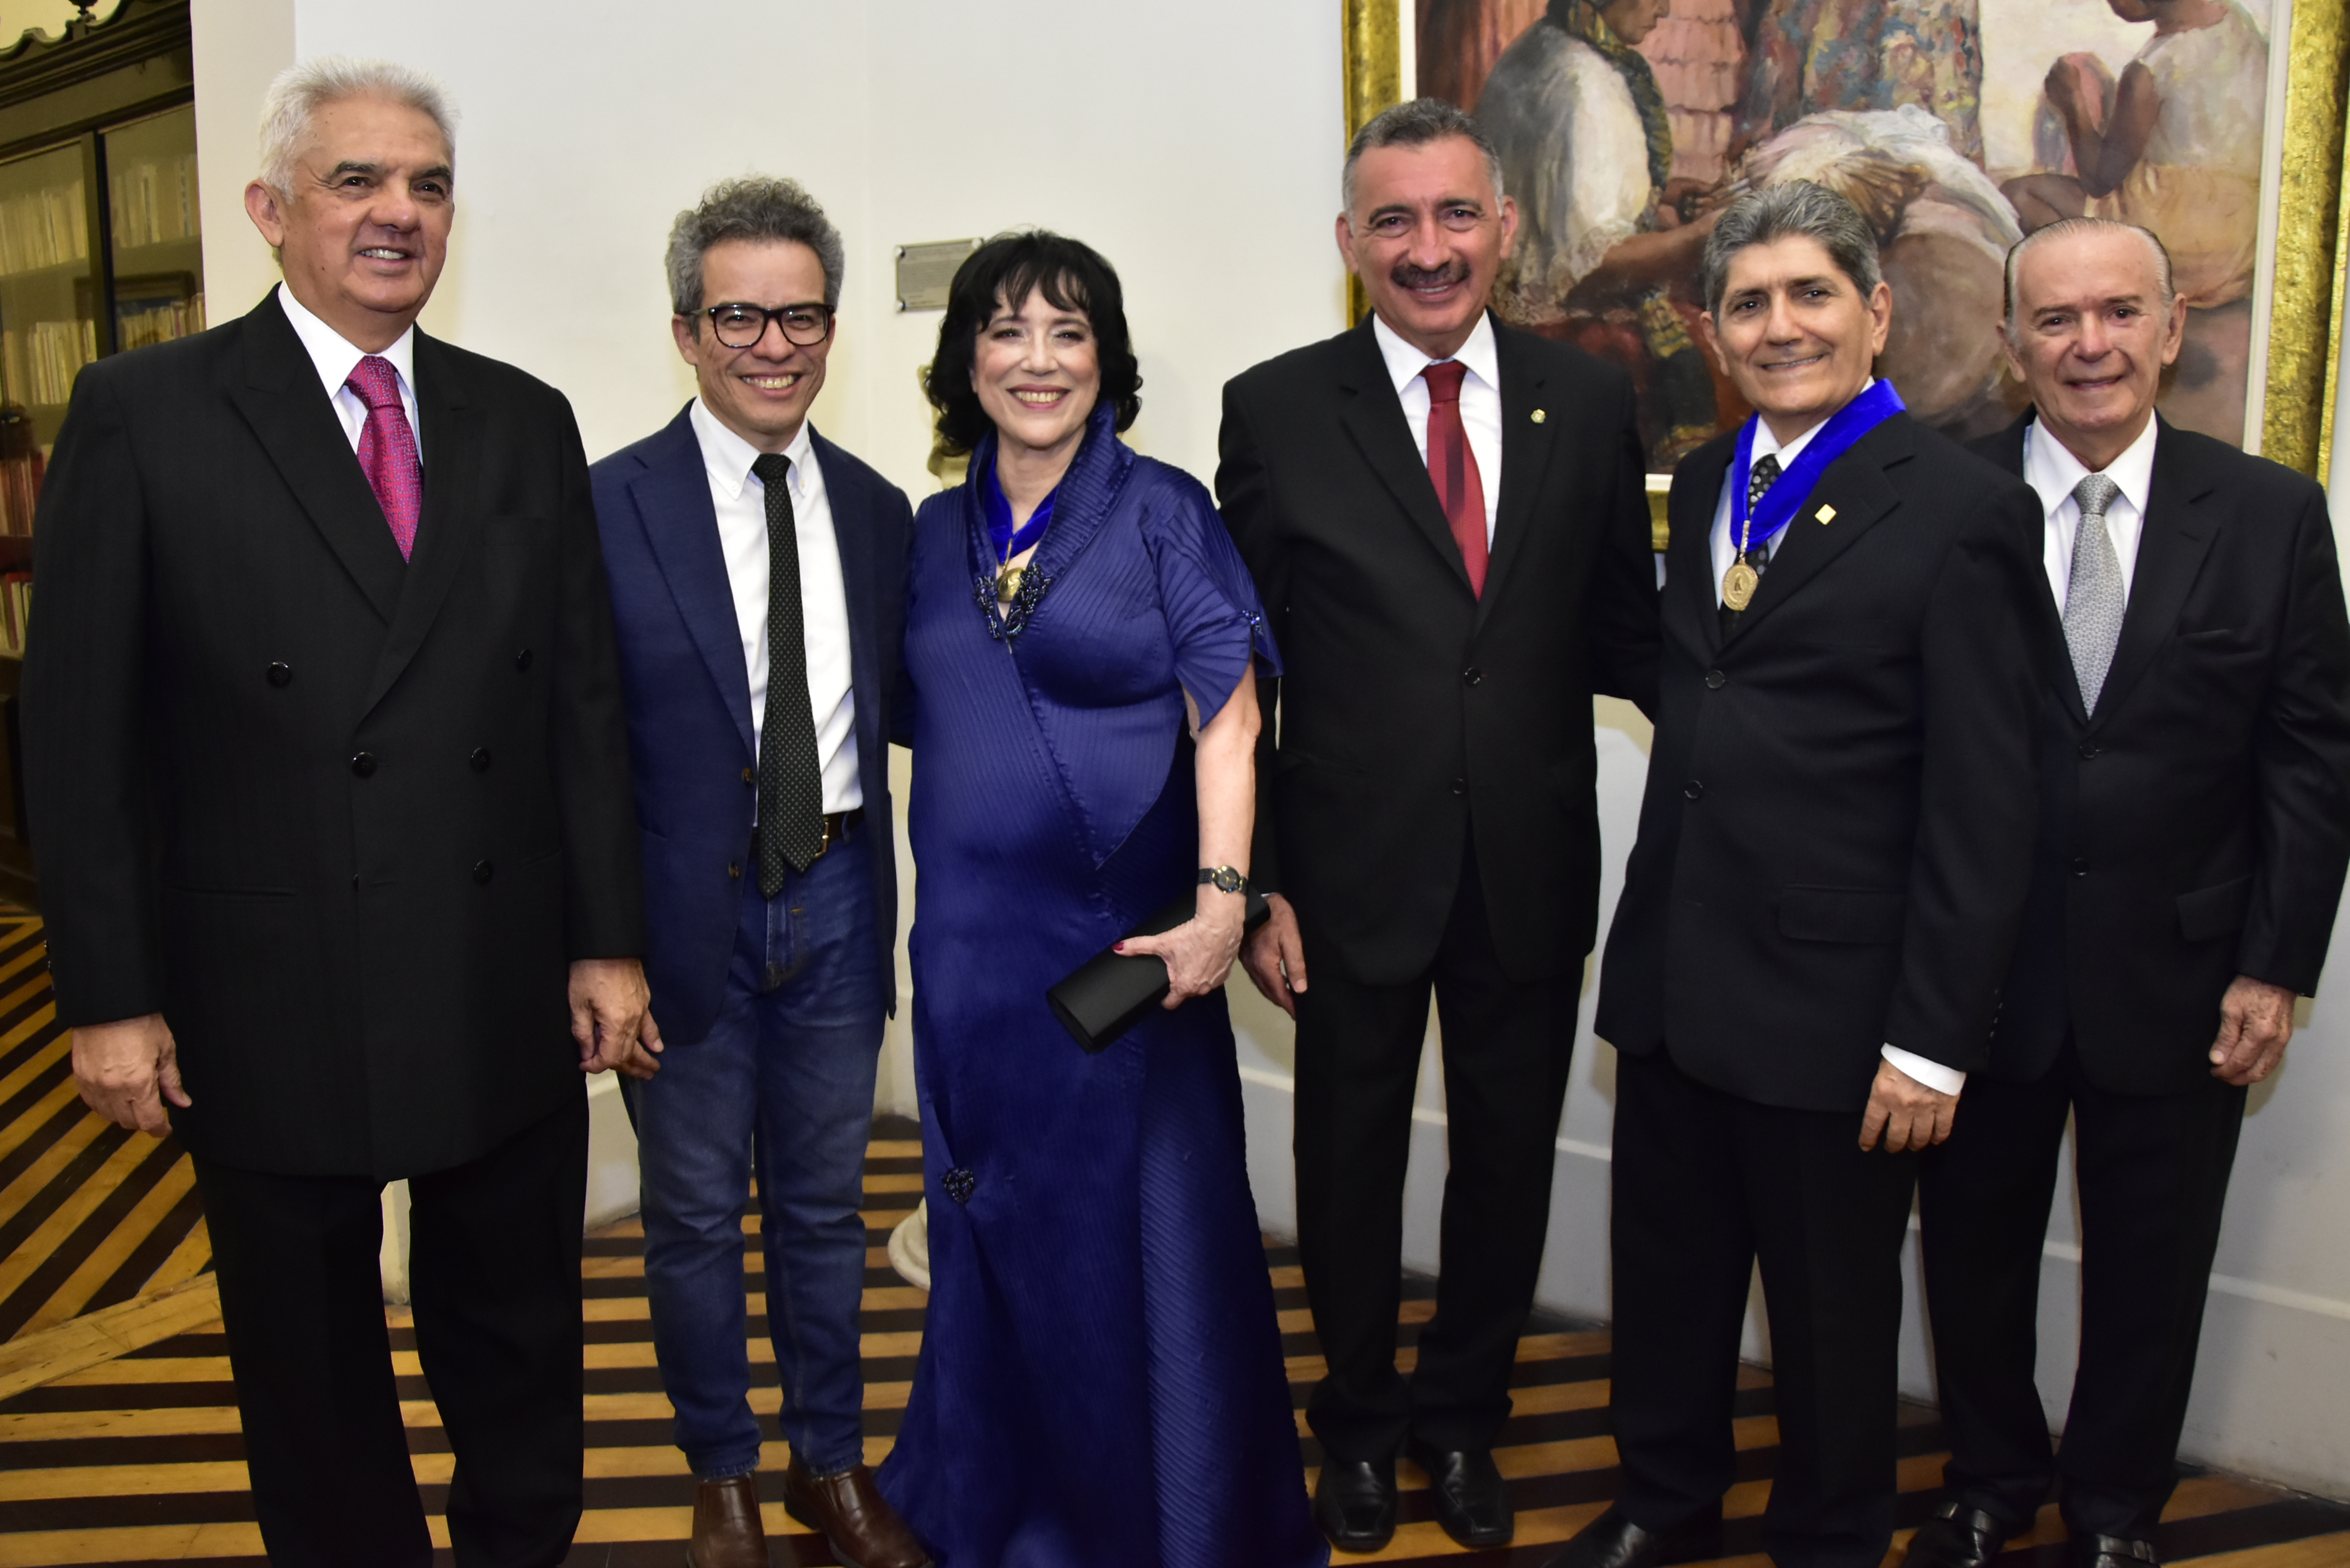 Angela Gutiérrez assume presidência da Academia Cearense de Letras em solenidade no Palácio da Luz